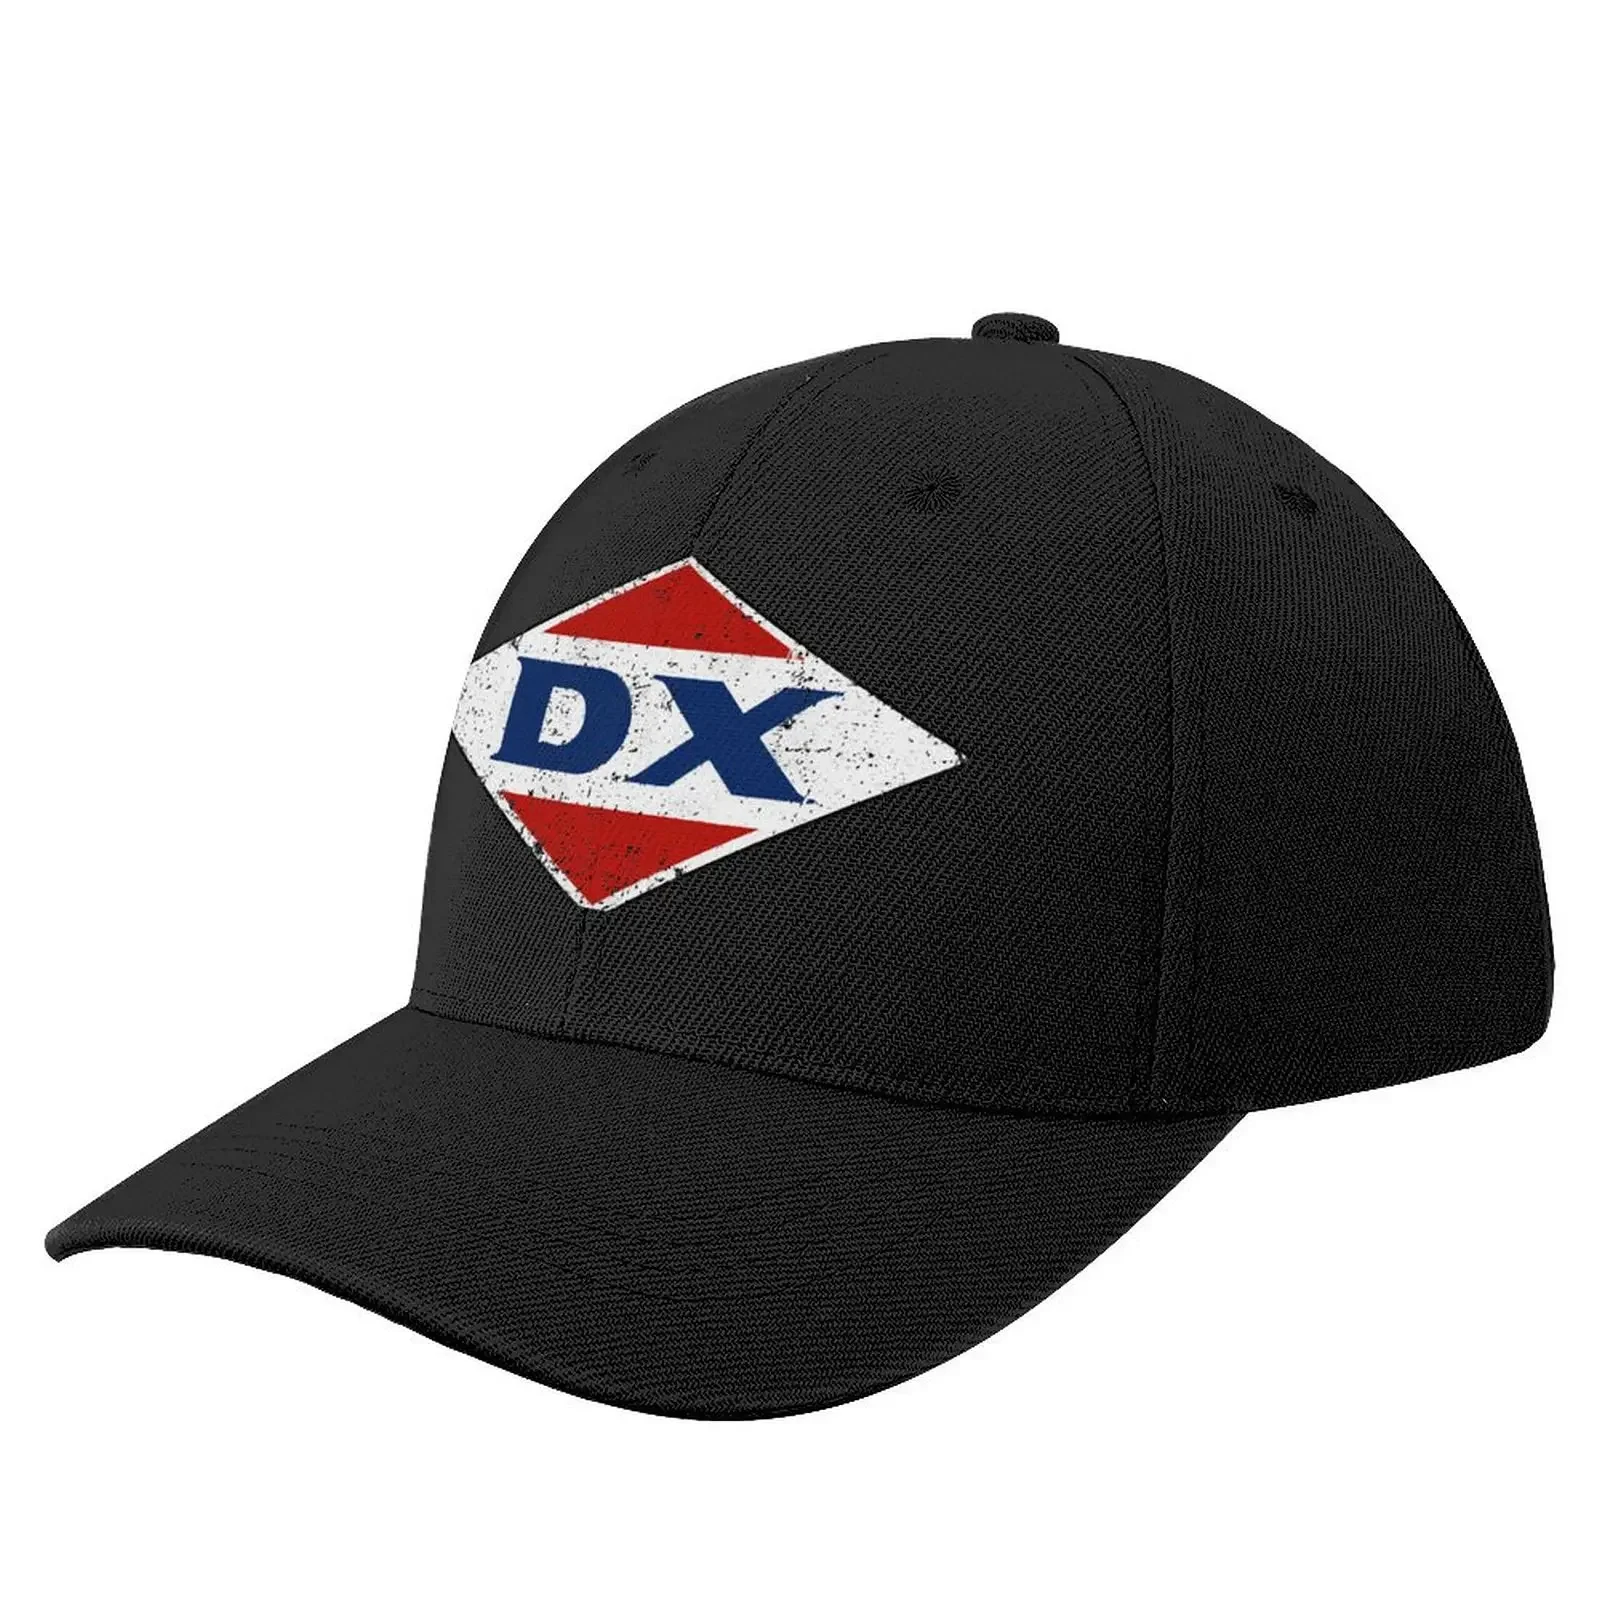 

DX Sign Baseball Cap Sunhat Trucker Cap Luxury Man Hat For Man Women's